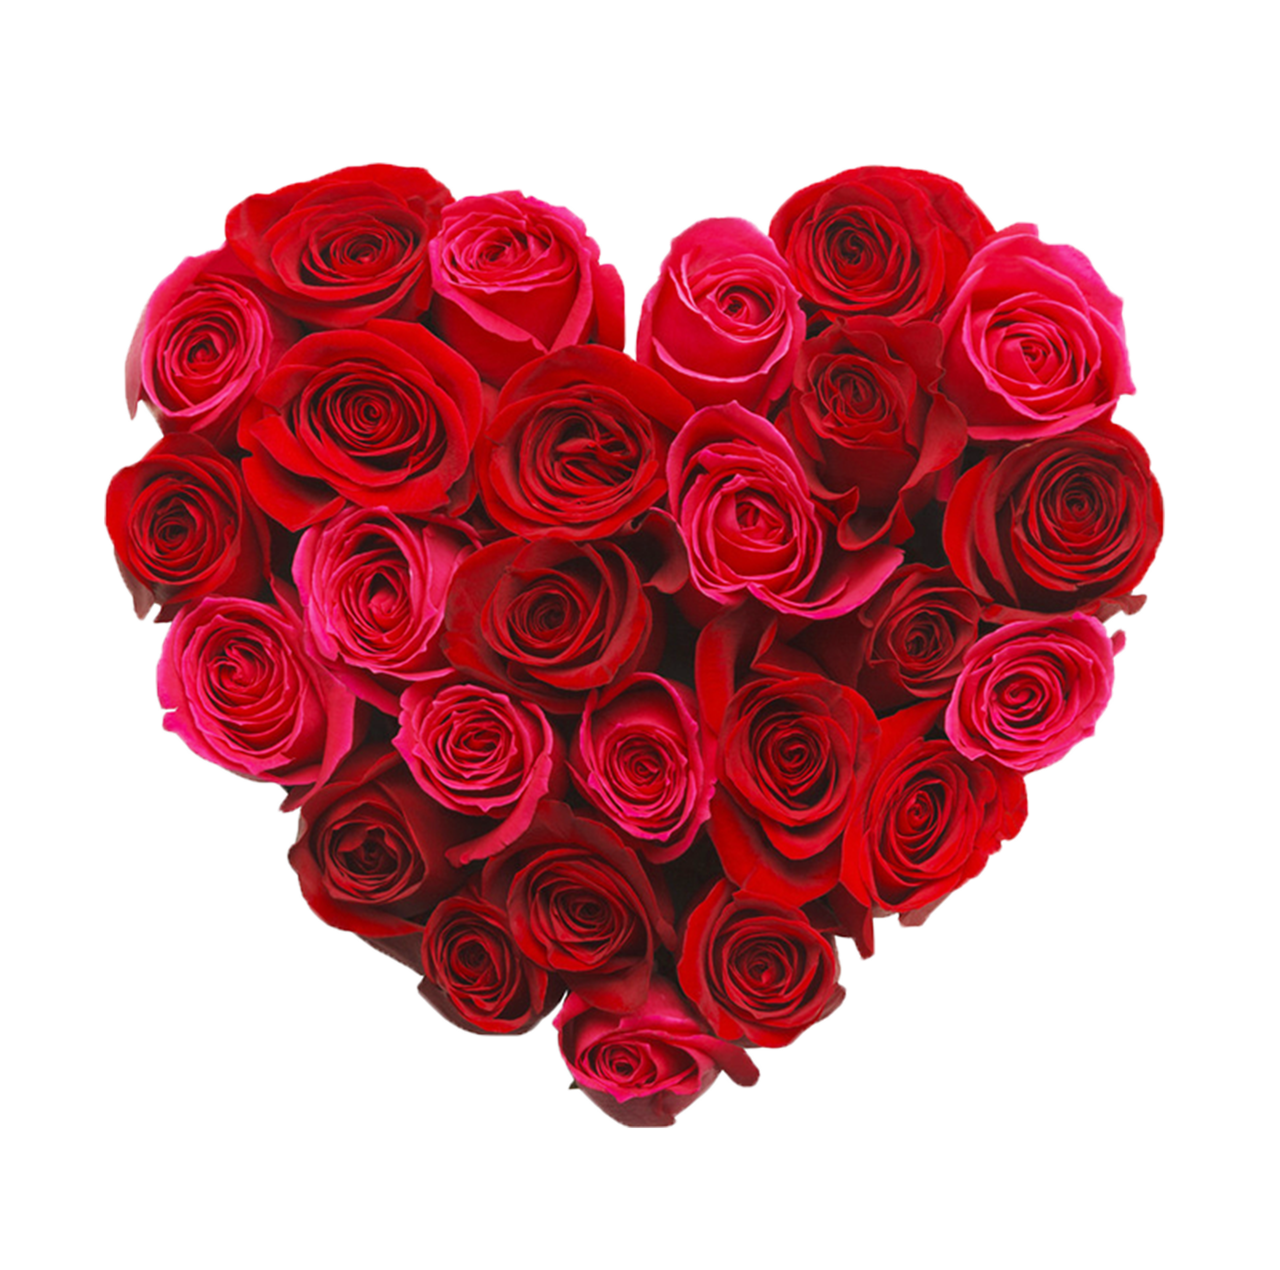 Heart Rose Download Transparent PNG Image